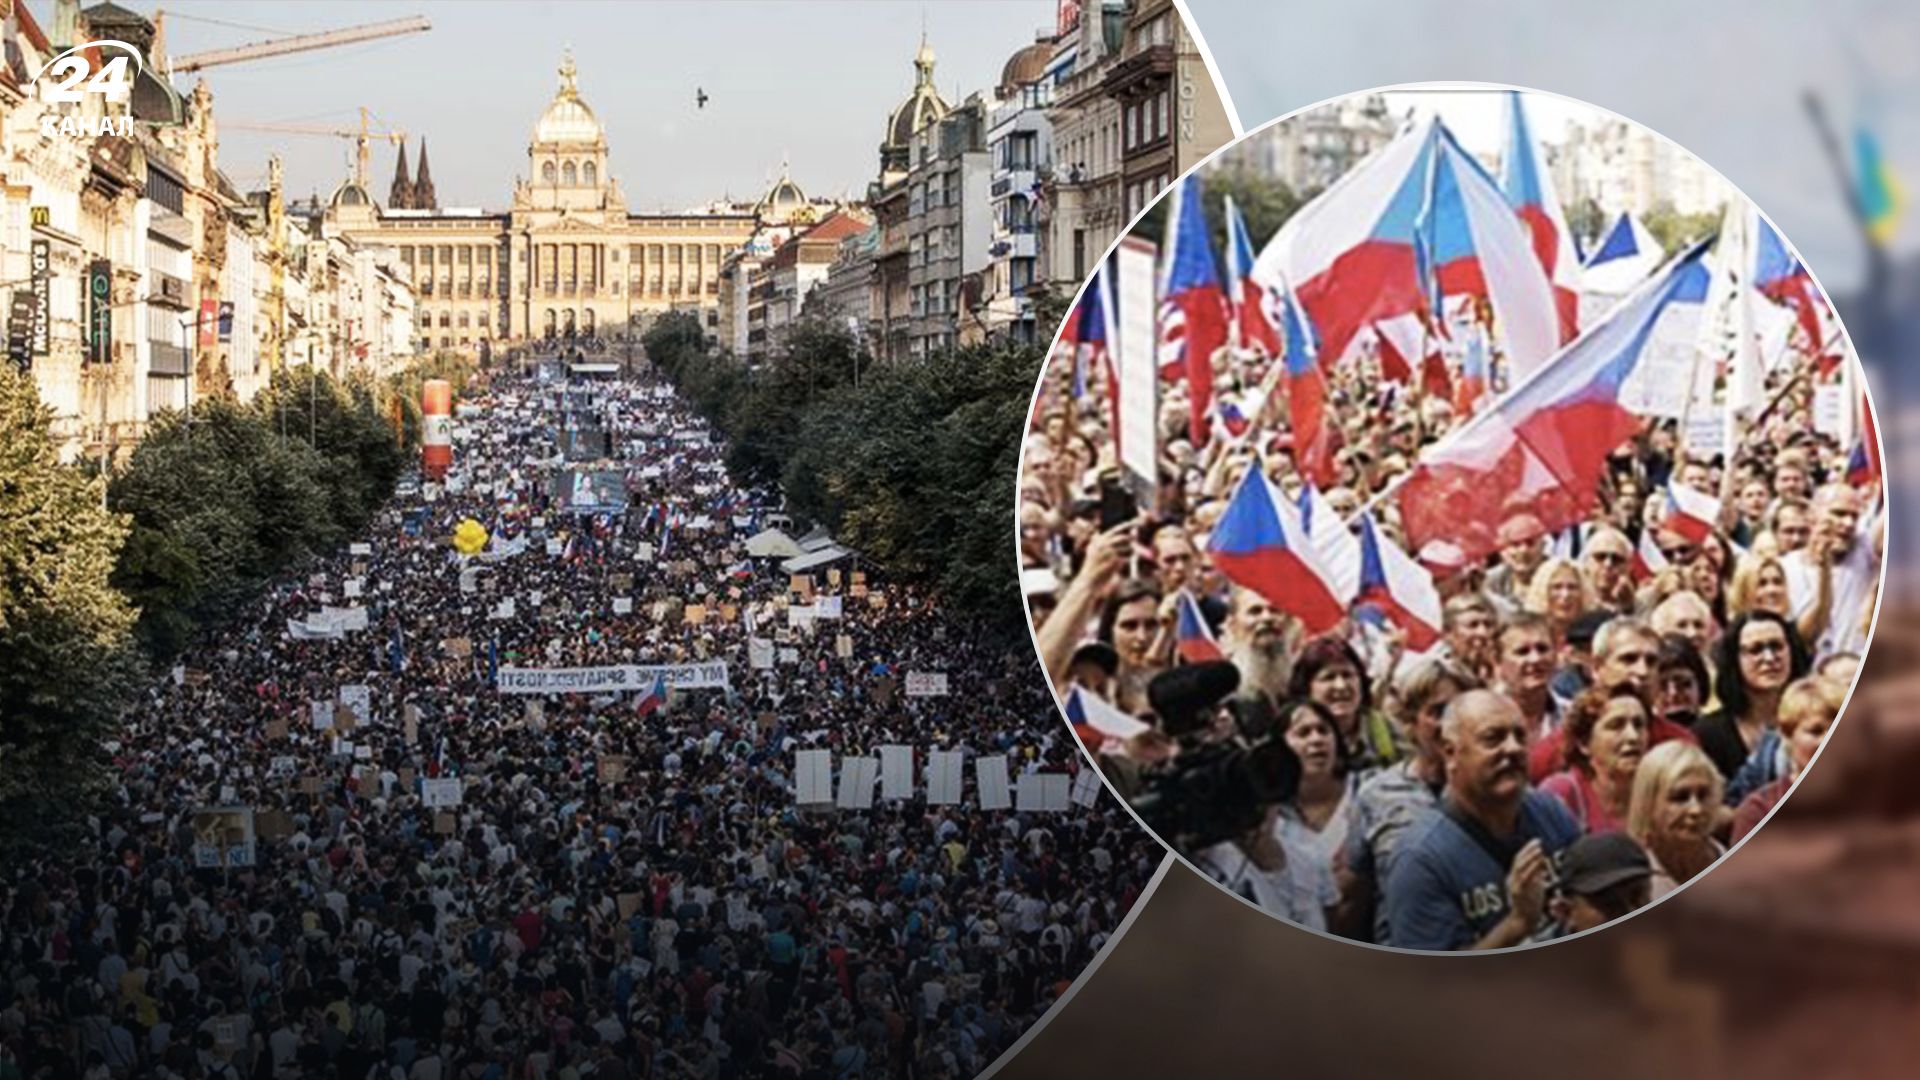 Чому у Празі відбулися масові мітинги - як політики намагаються маніпулювати - Мокрик